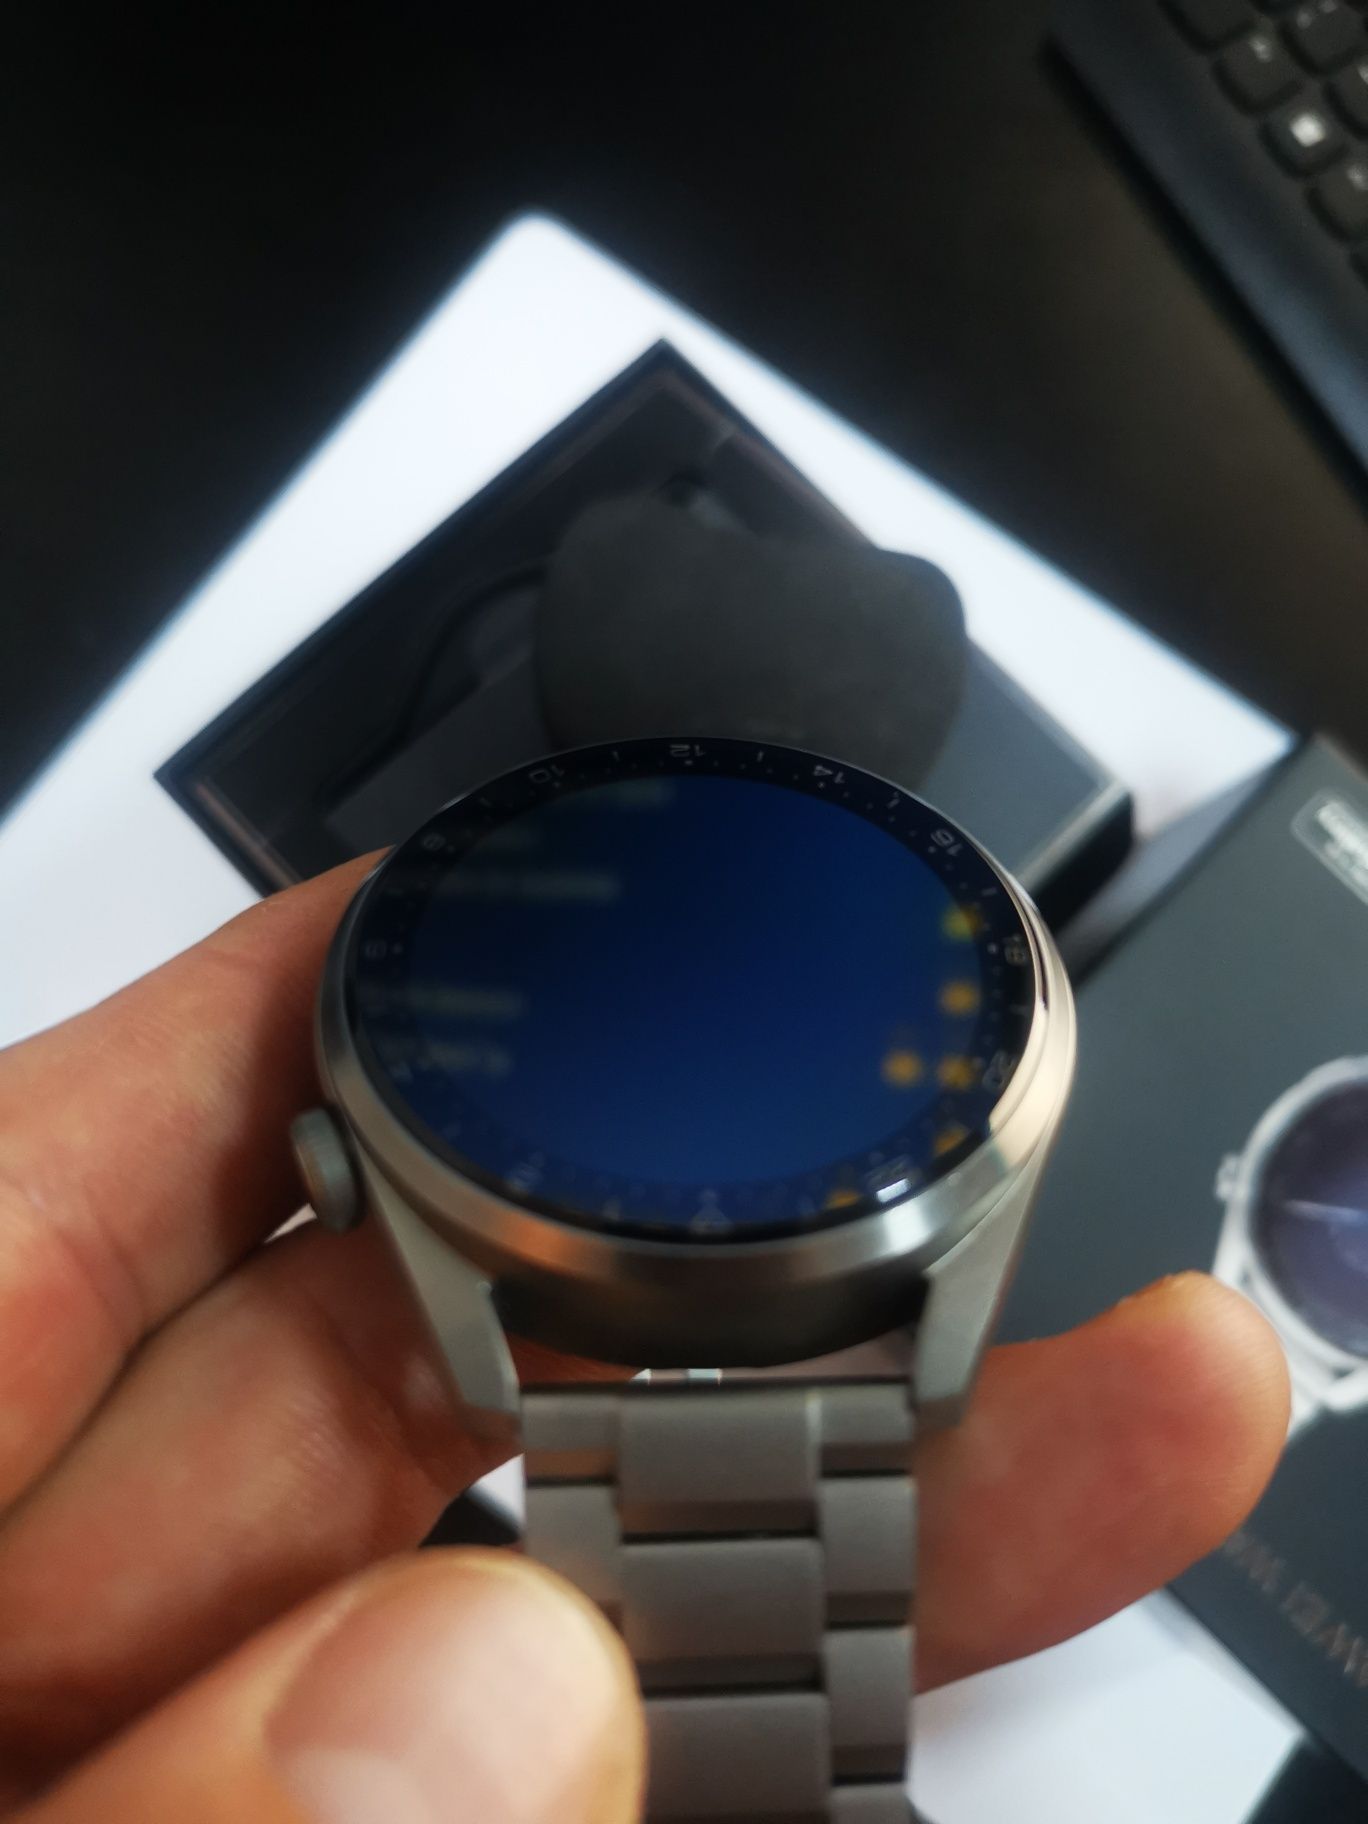 Huawei Watch GT 3 Pro - 46mm
Pret: 1090lei

Ceasul este